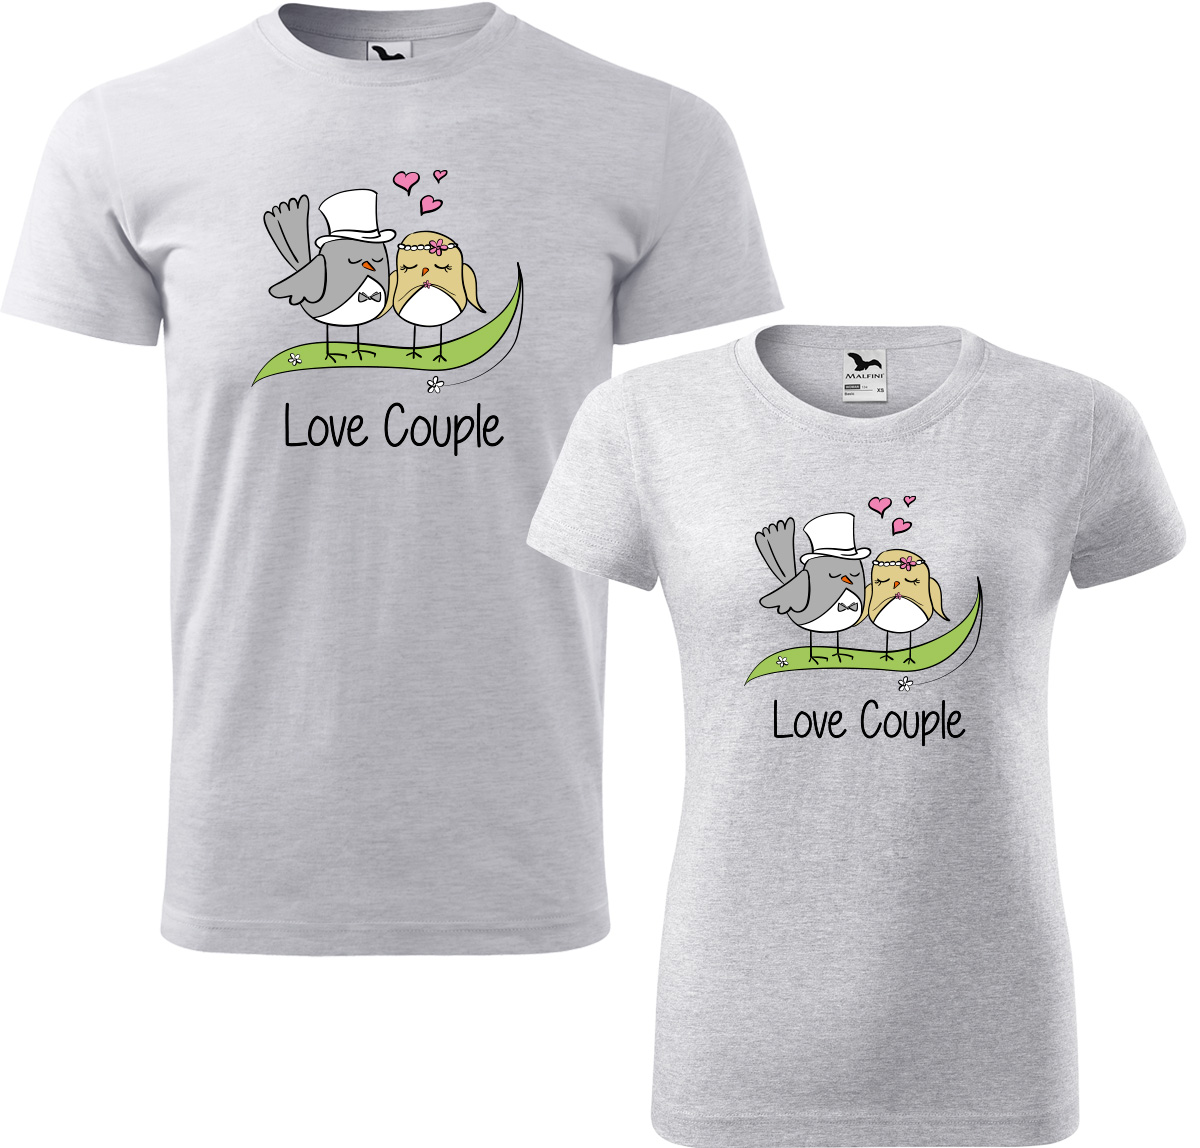 Trička pro páry - Love couple Barva: Světle šedý melír (03), Velikost dámské tričko: 3XL, Velikost pánské tričko: 3XL